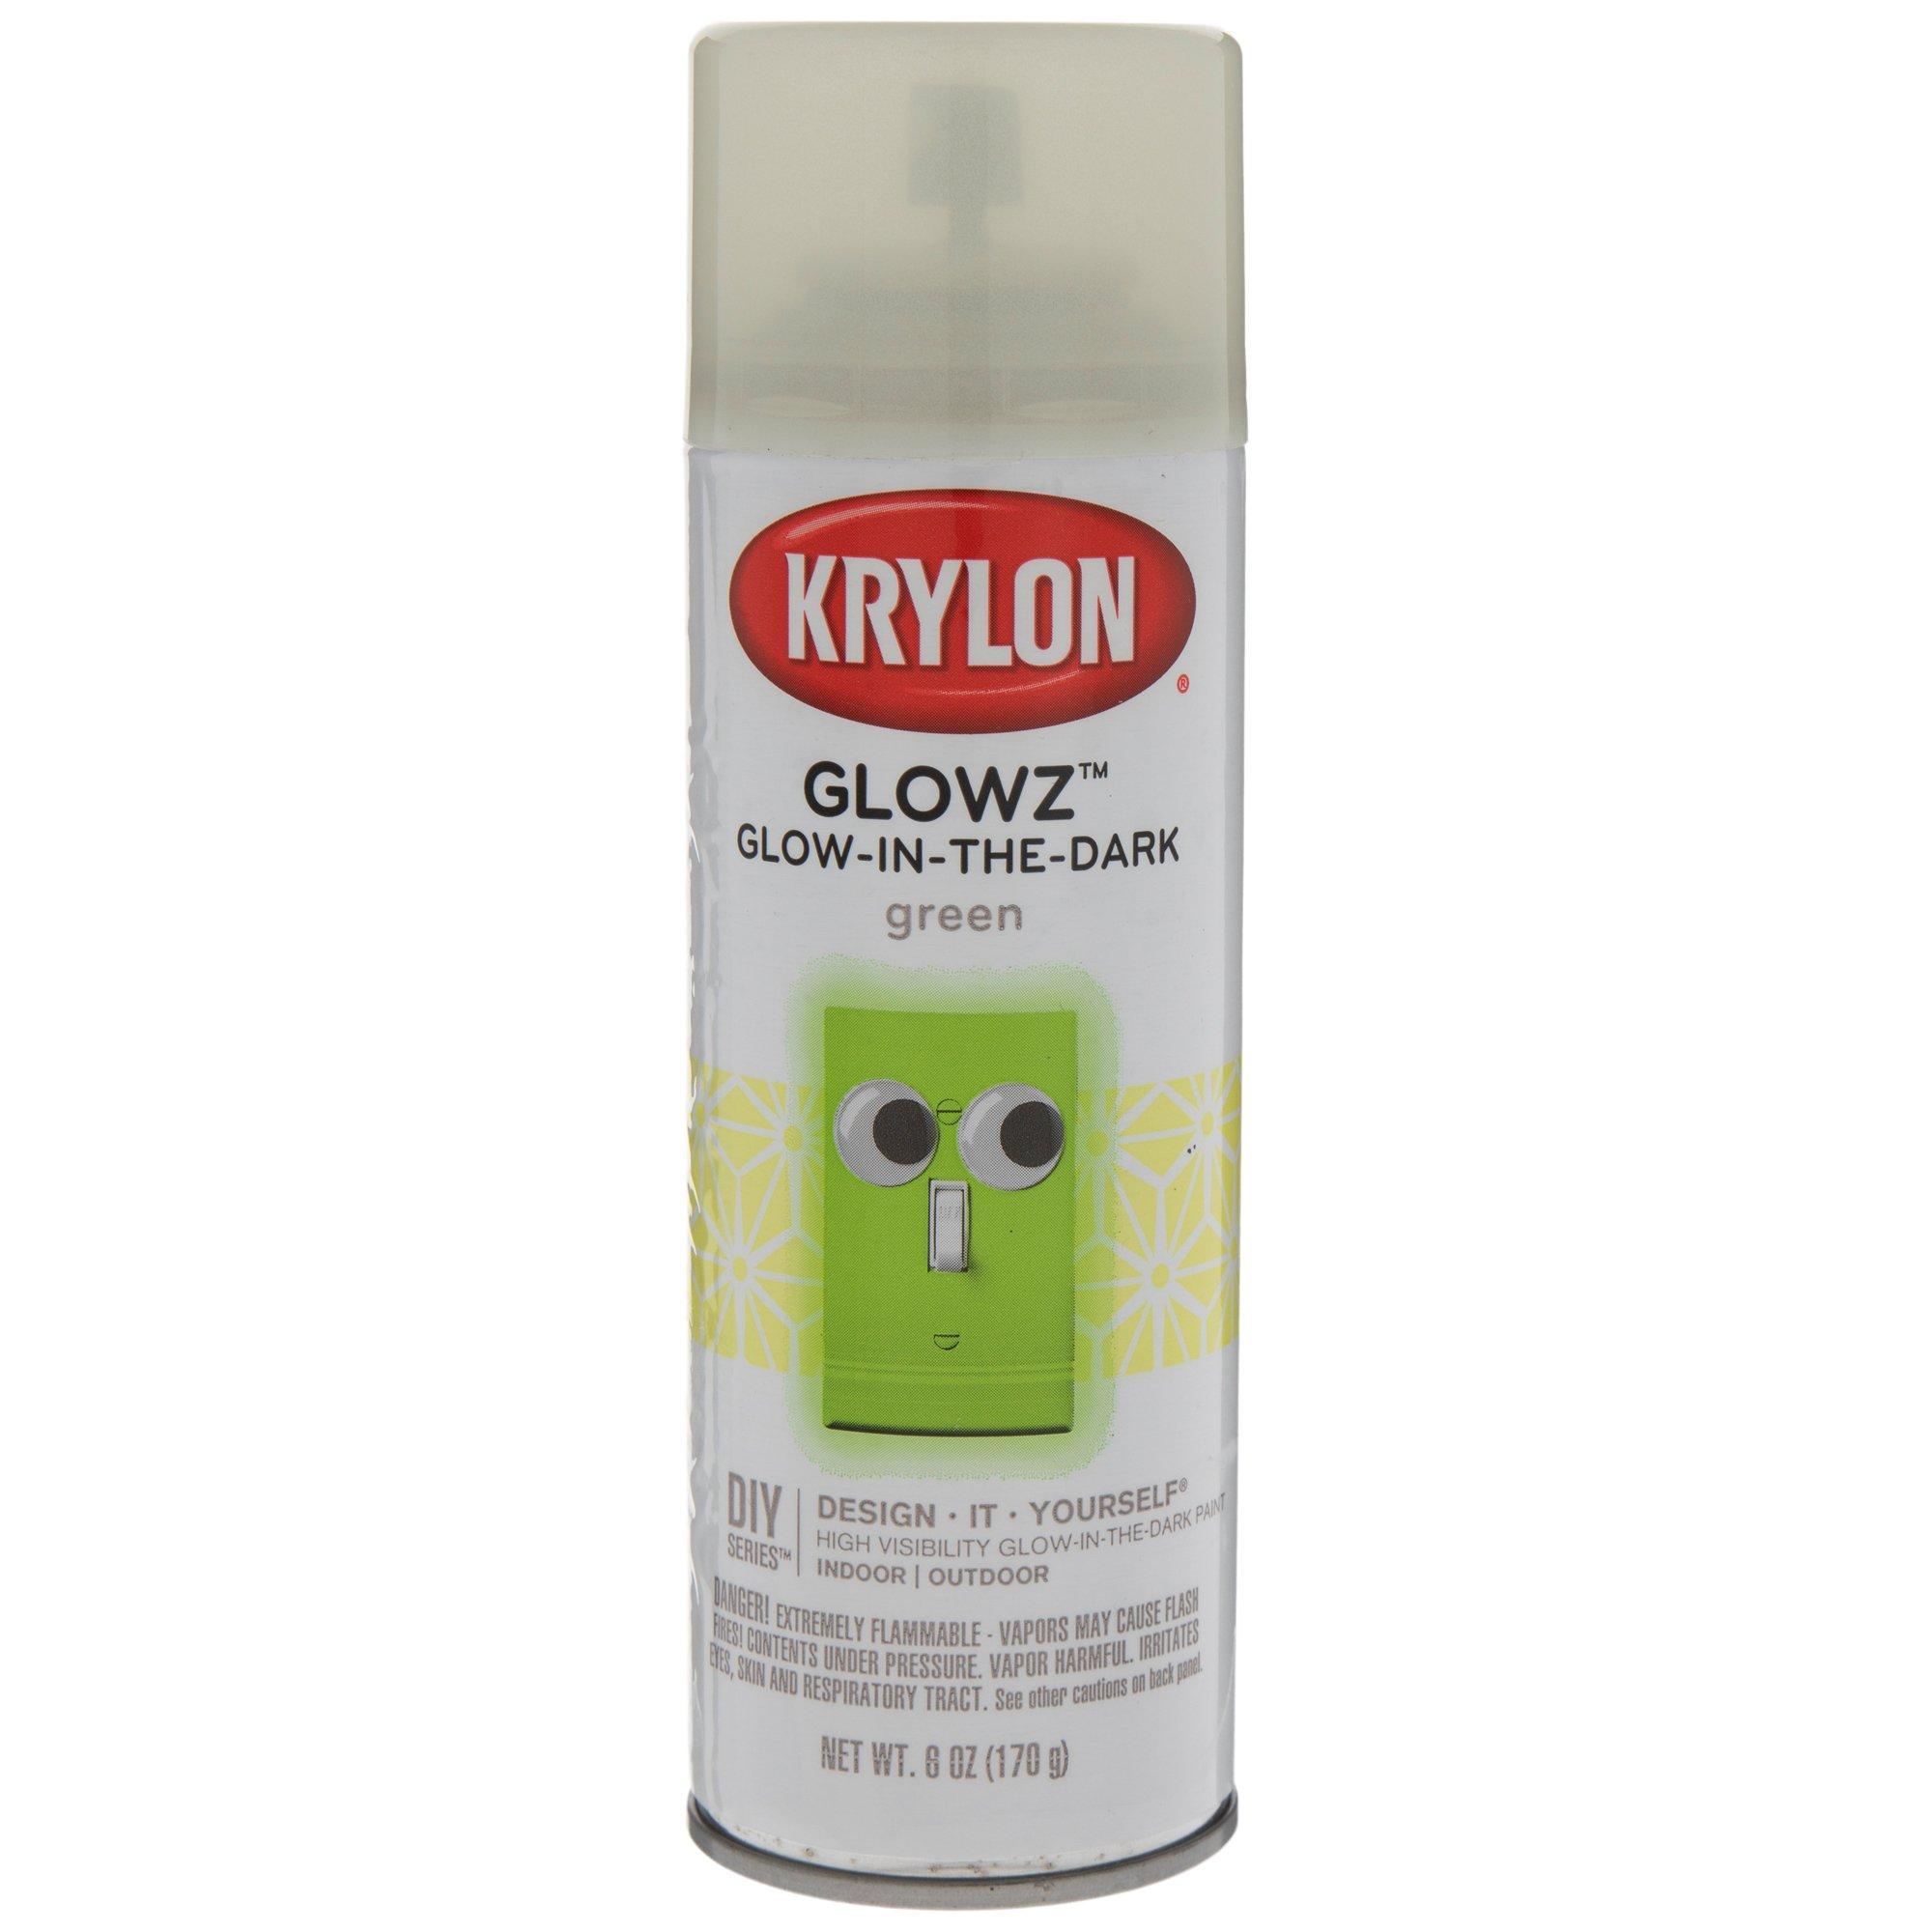 Krylon Glowz Glowz-Pack Flat White Glow In The Dark (NET WT. 10-oz) at